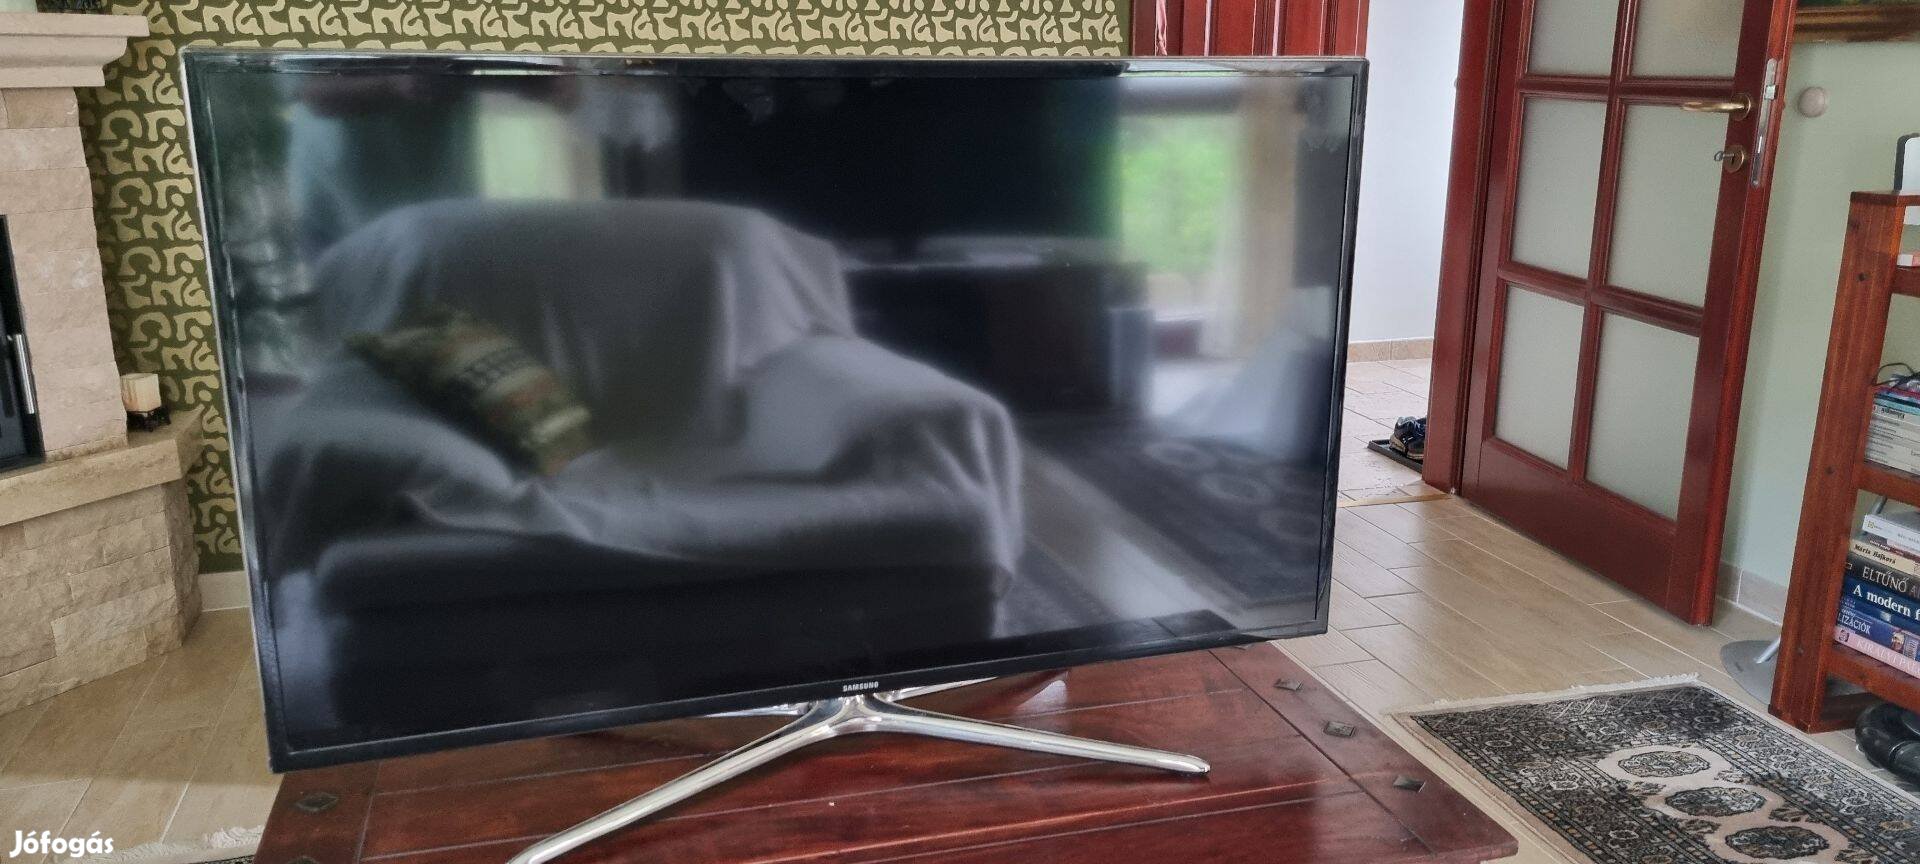 Samsung 116cm LED TV, Full HD